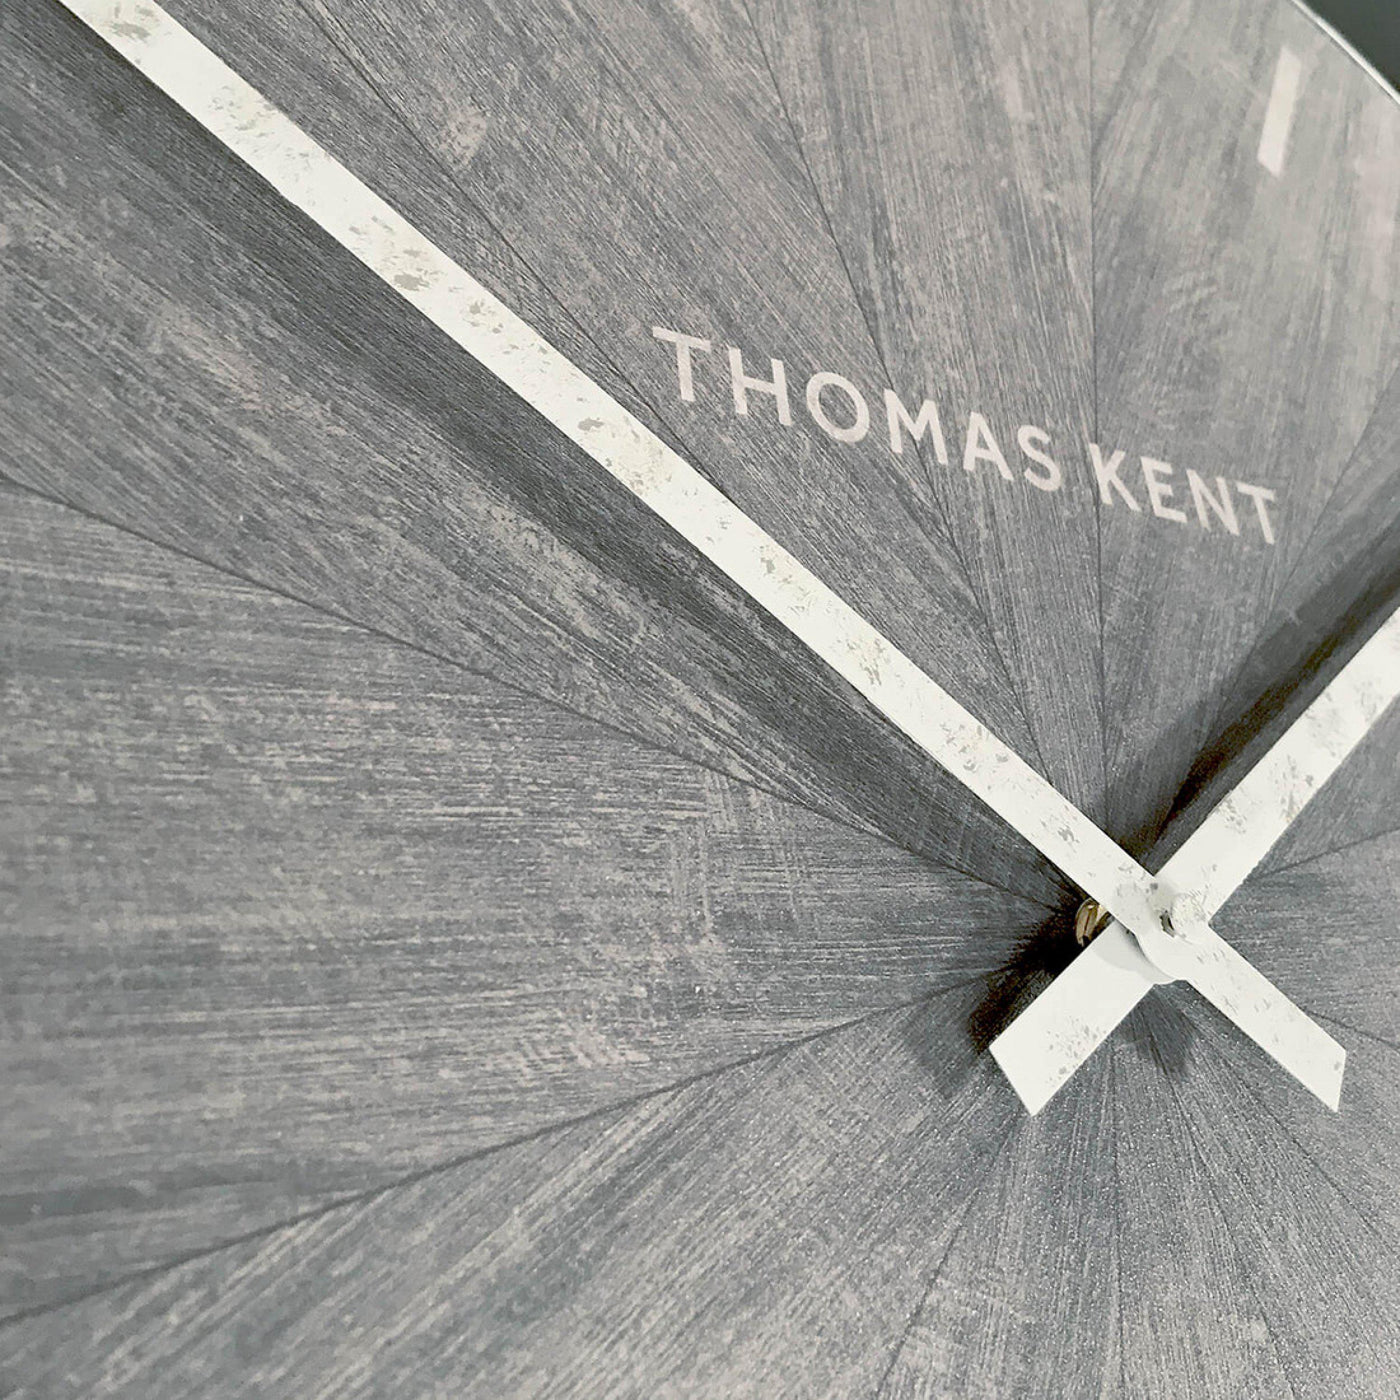 Thomas Kent London. Wharf Wall Clock 30" (76cm) Limestone. - timeframedclocks